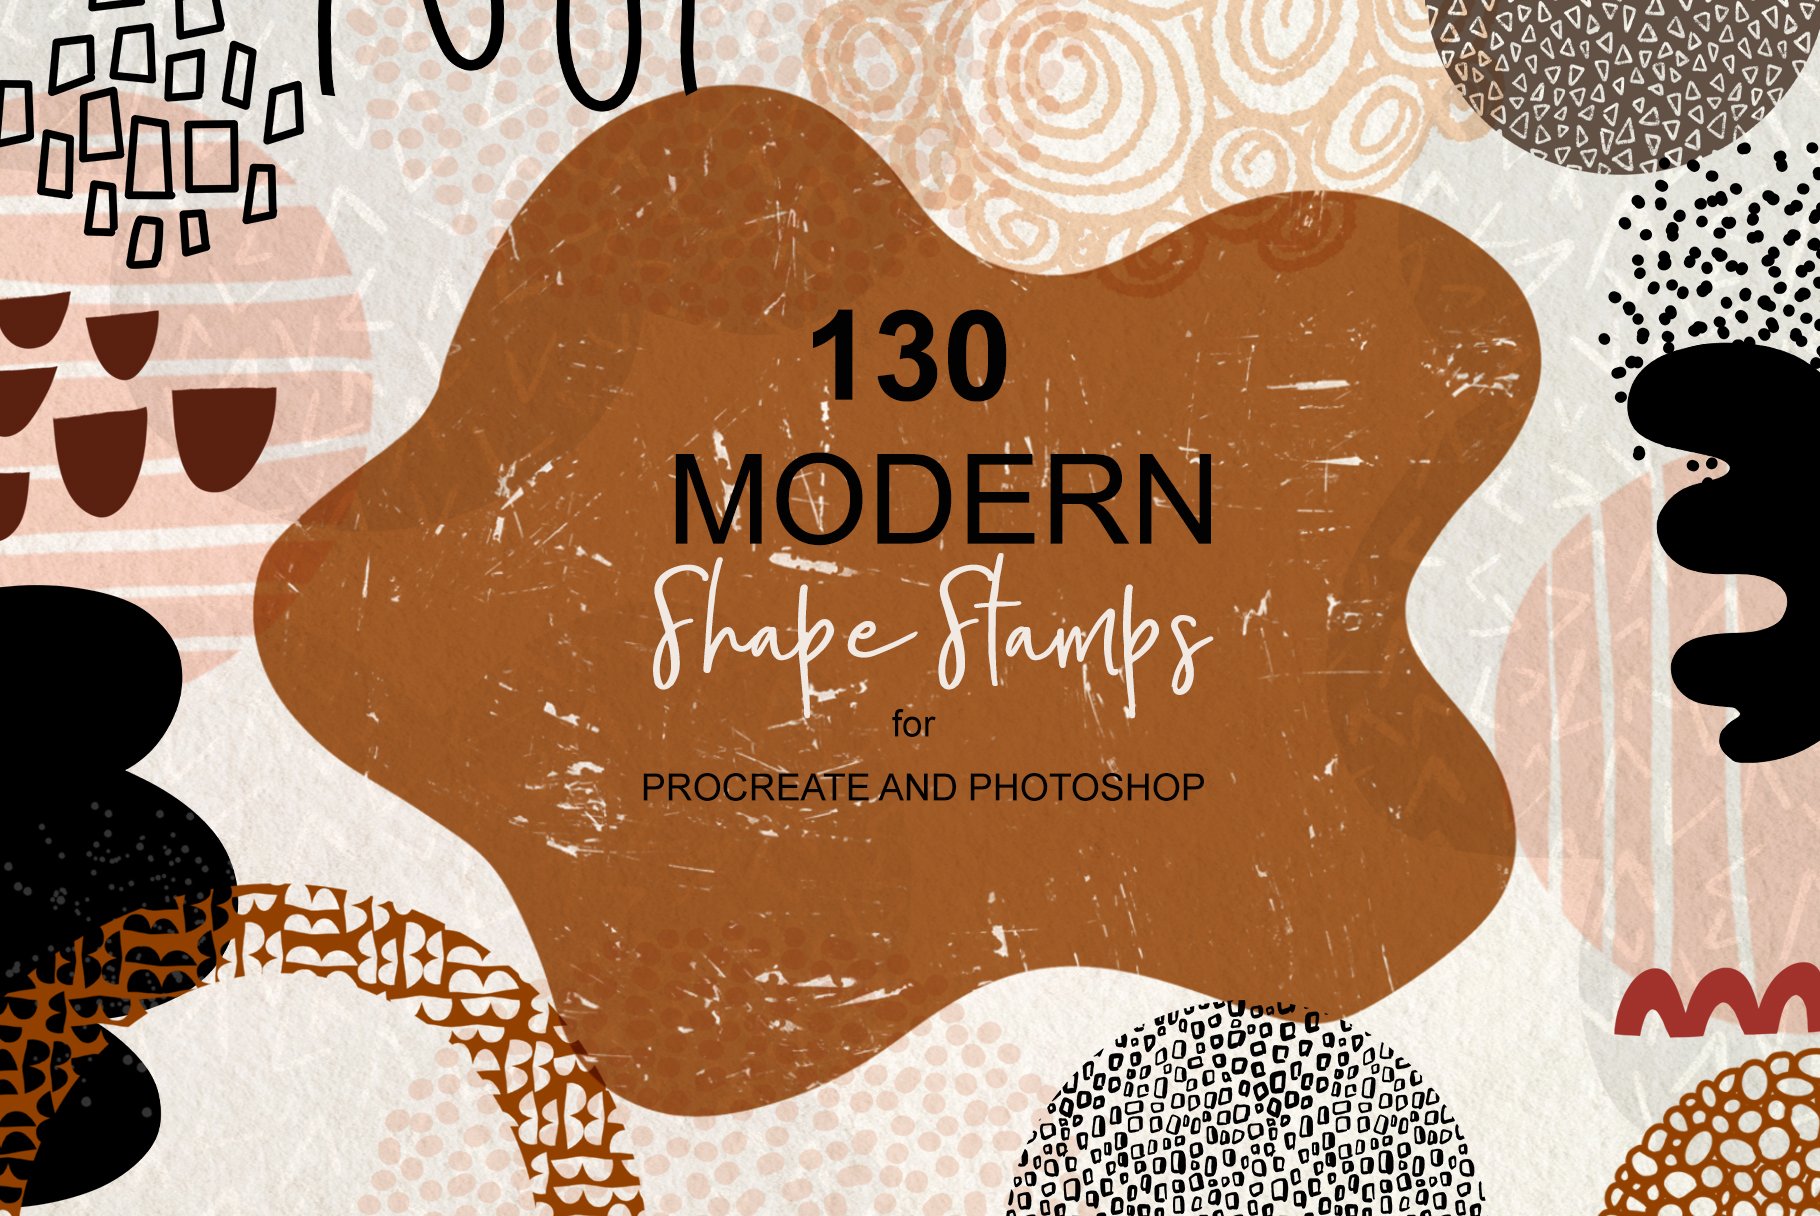 Modern Shape Stampscover image.